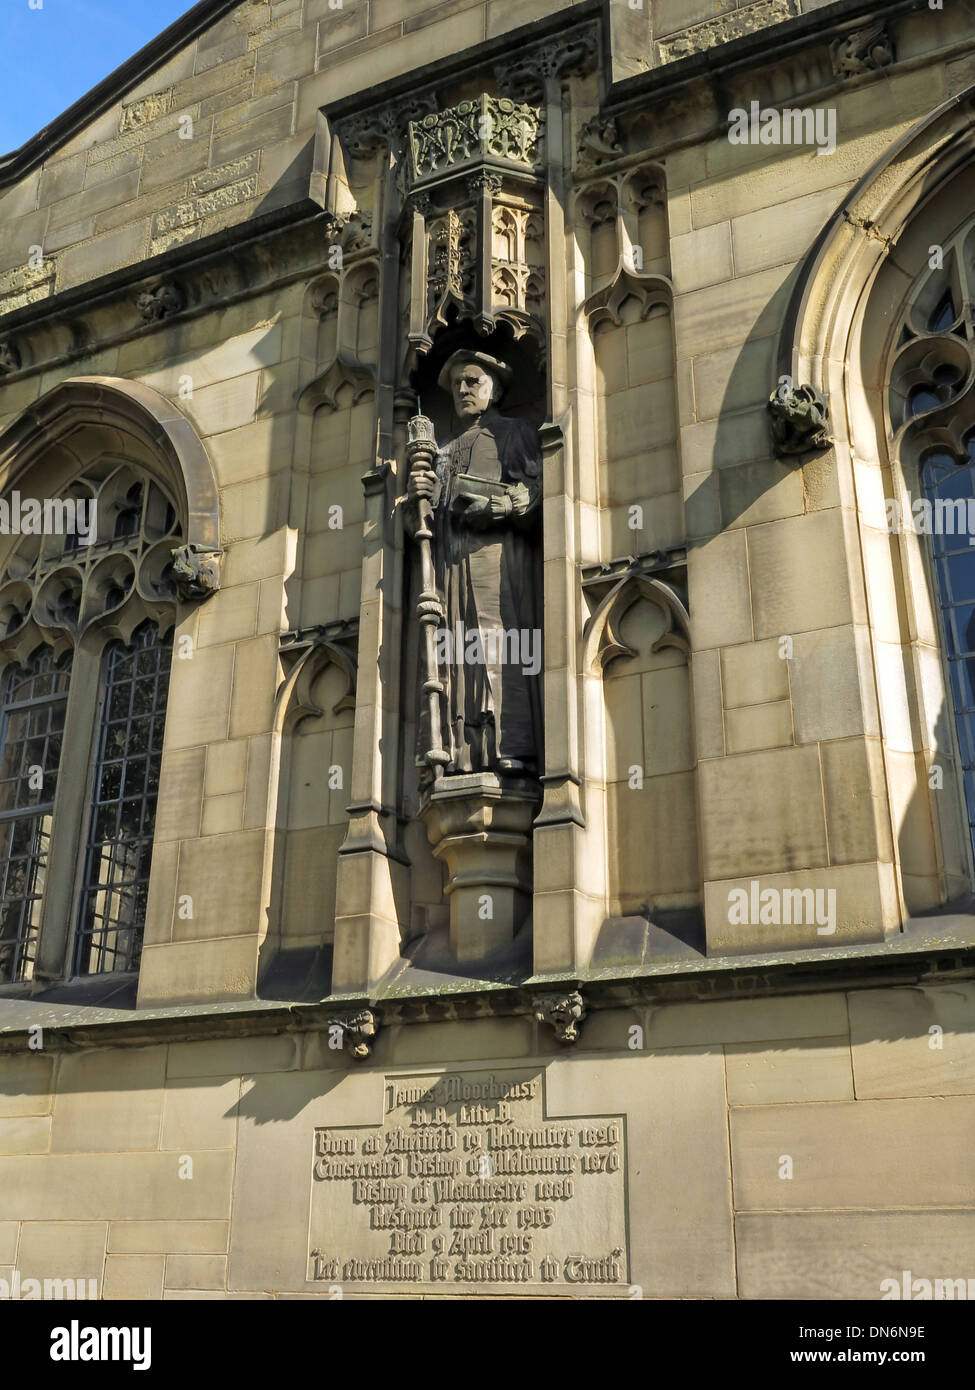 James Moorhouse Statue de la Cathédrale de Manchester England UK Banque D'Images